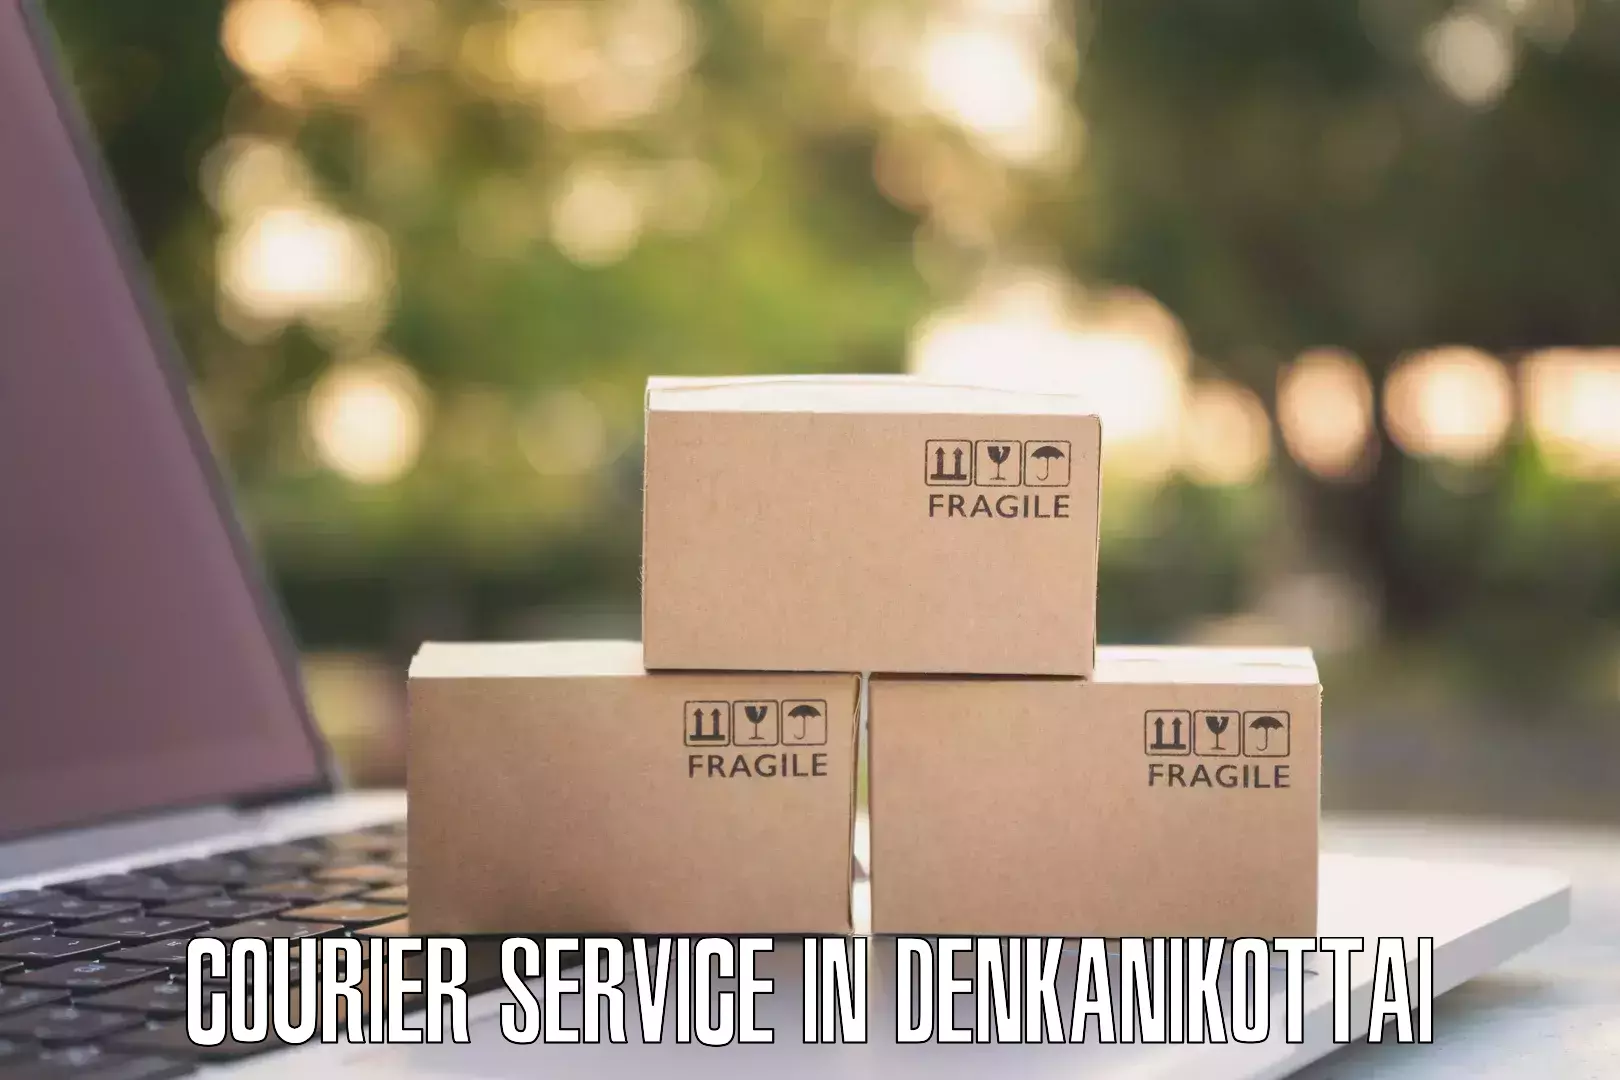 Comprehensive delivery network in Denkanikottai